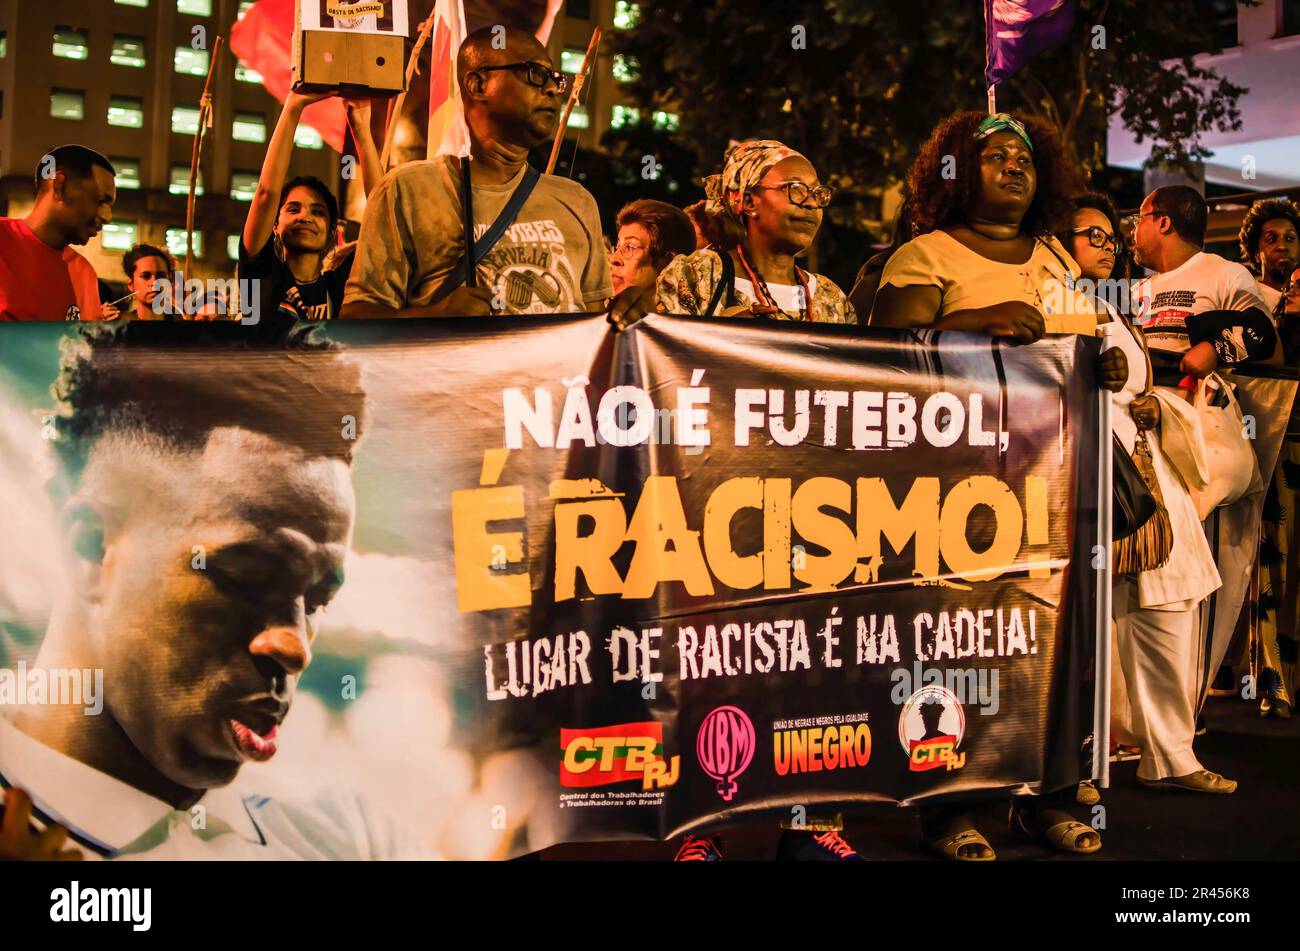 Demonstranten halten ein Banner, auf dem steht: "Nicht Fußball ist Rassismus!" Rassistischer Platz ist während der Demonstration im Gefängnis. Manifestation in der Stadt Rio de Janeiro, in Solidarität mit Real Madrids Spieler Vinícius Júnior, der in Spanien während eines Spiels gegen das Team von Valencia am Sonntag (21) Rassismus erlitt. Vinícius Jr. war Opfer von Rassismus und Gewalt, als er während des Spiels von mehreren Fußballfans und Gegnern als „Mono“ (Übersetzung zu „Affe“) bezeichnet wurde. Er wurde später aus dem Spiel geworfen. Vinicius Junior hat bereits acht Fälle von Rassismus, die von La Liga noch bearbeitet werden. Stockfoto